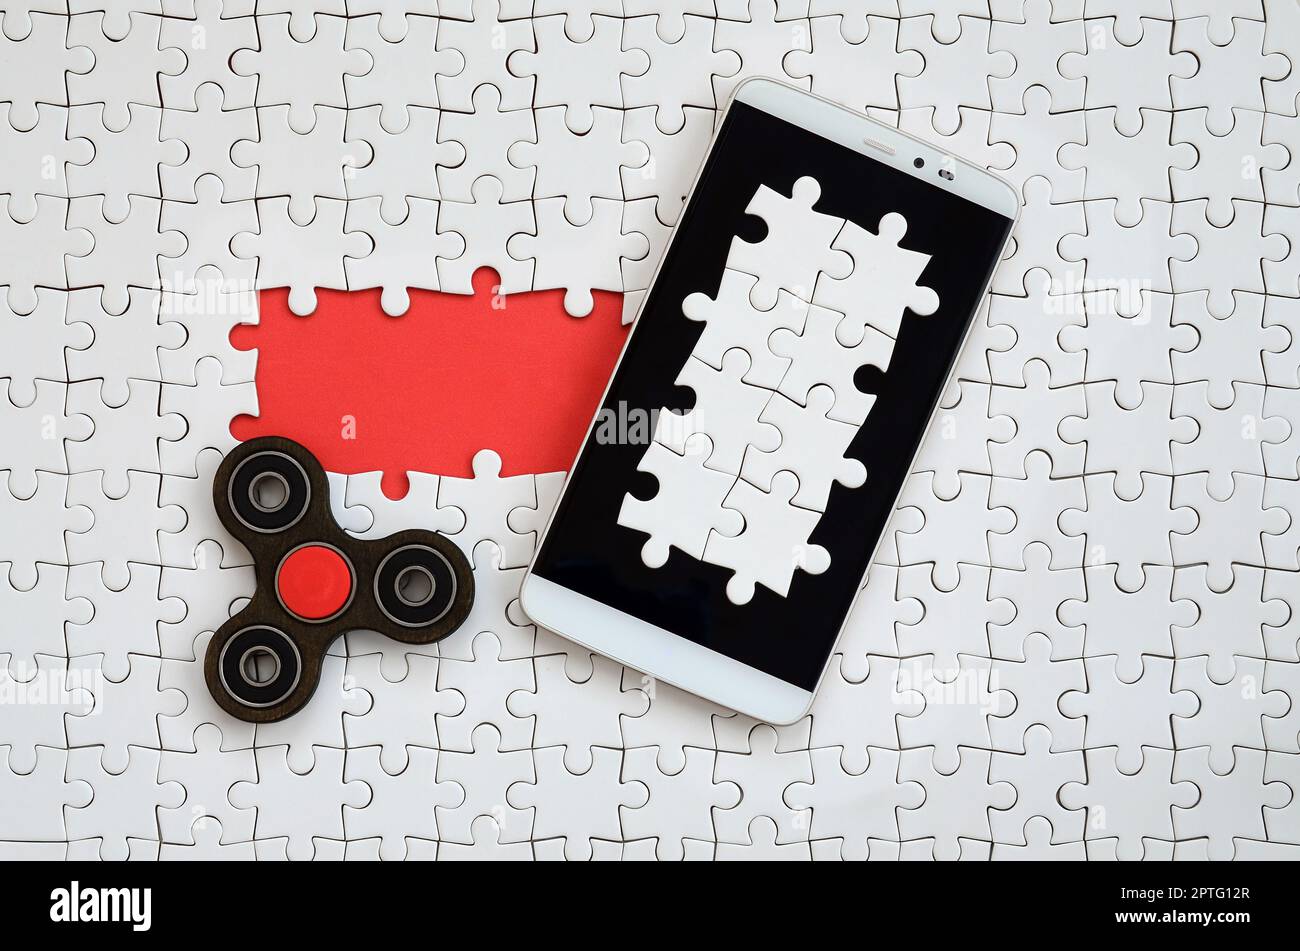 Una moderna grande smartphone con un touch screen e un filatore giacciono su un bianco puzzle in uno stato assemblato con gli elementi mancanti Foto Stock